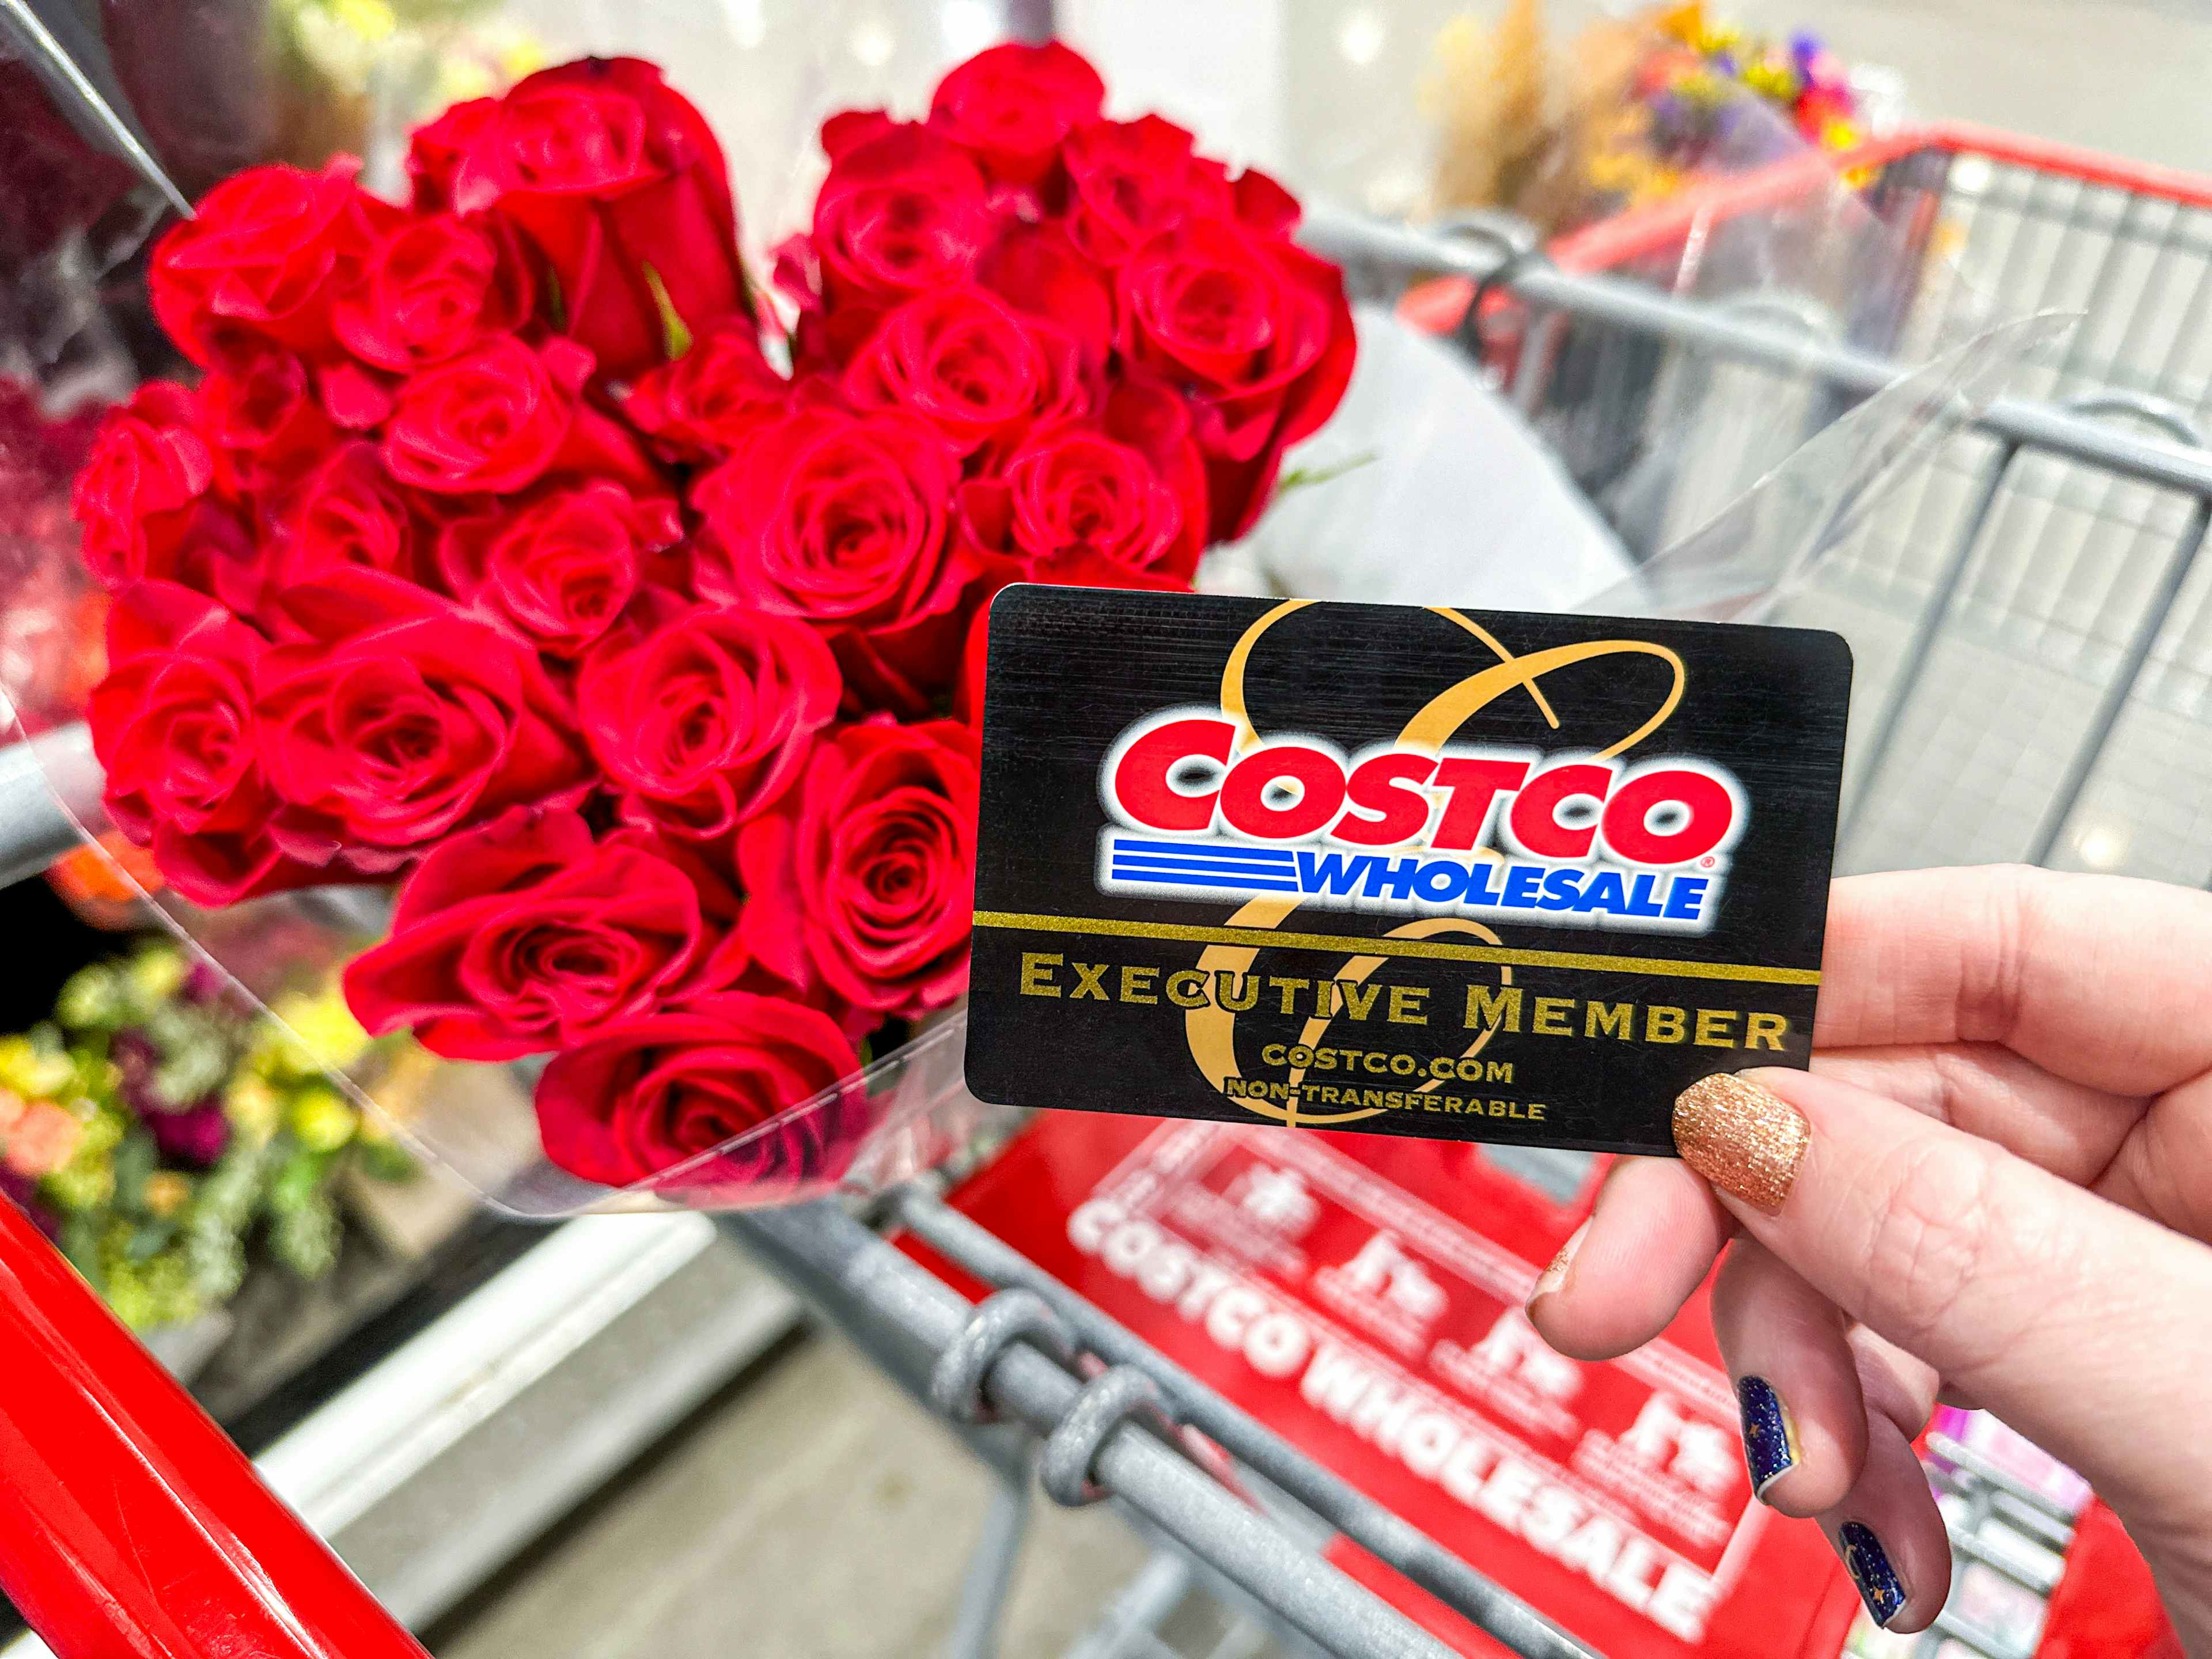 costco-wholesale-bouquet-roses-flowers-kcl-5